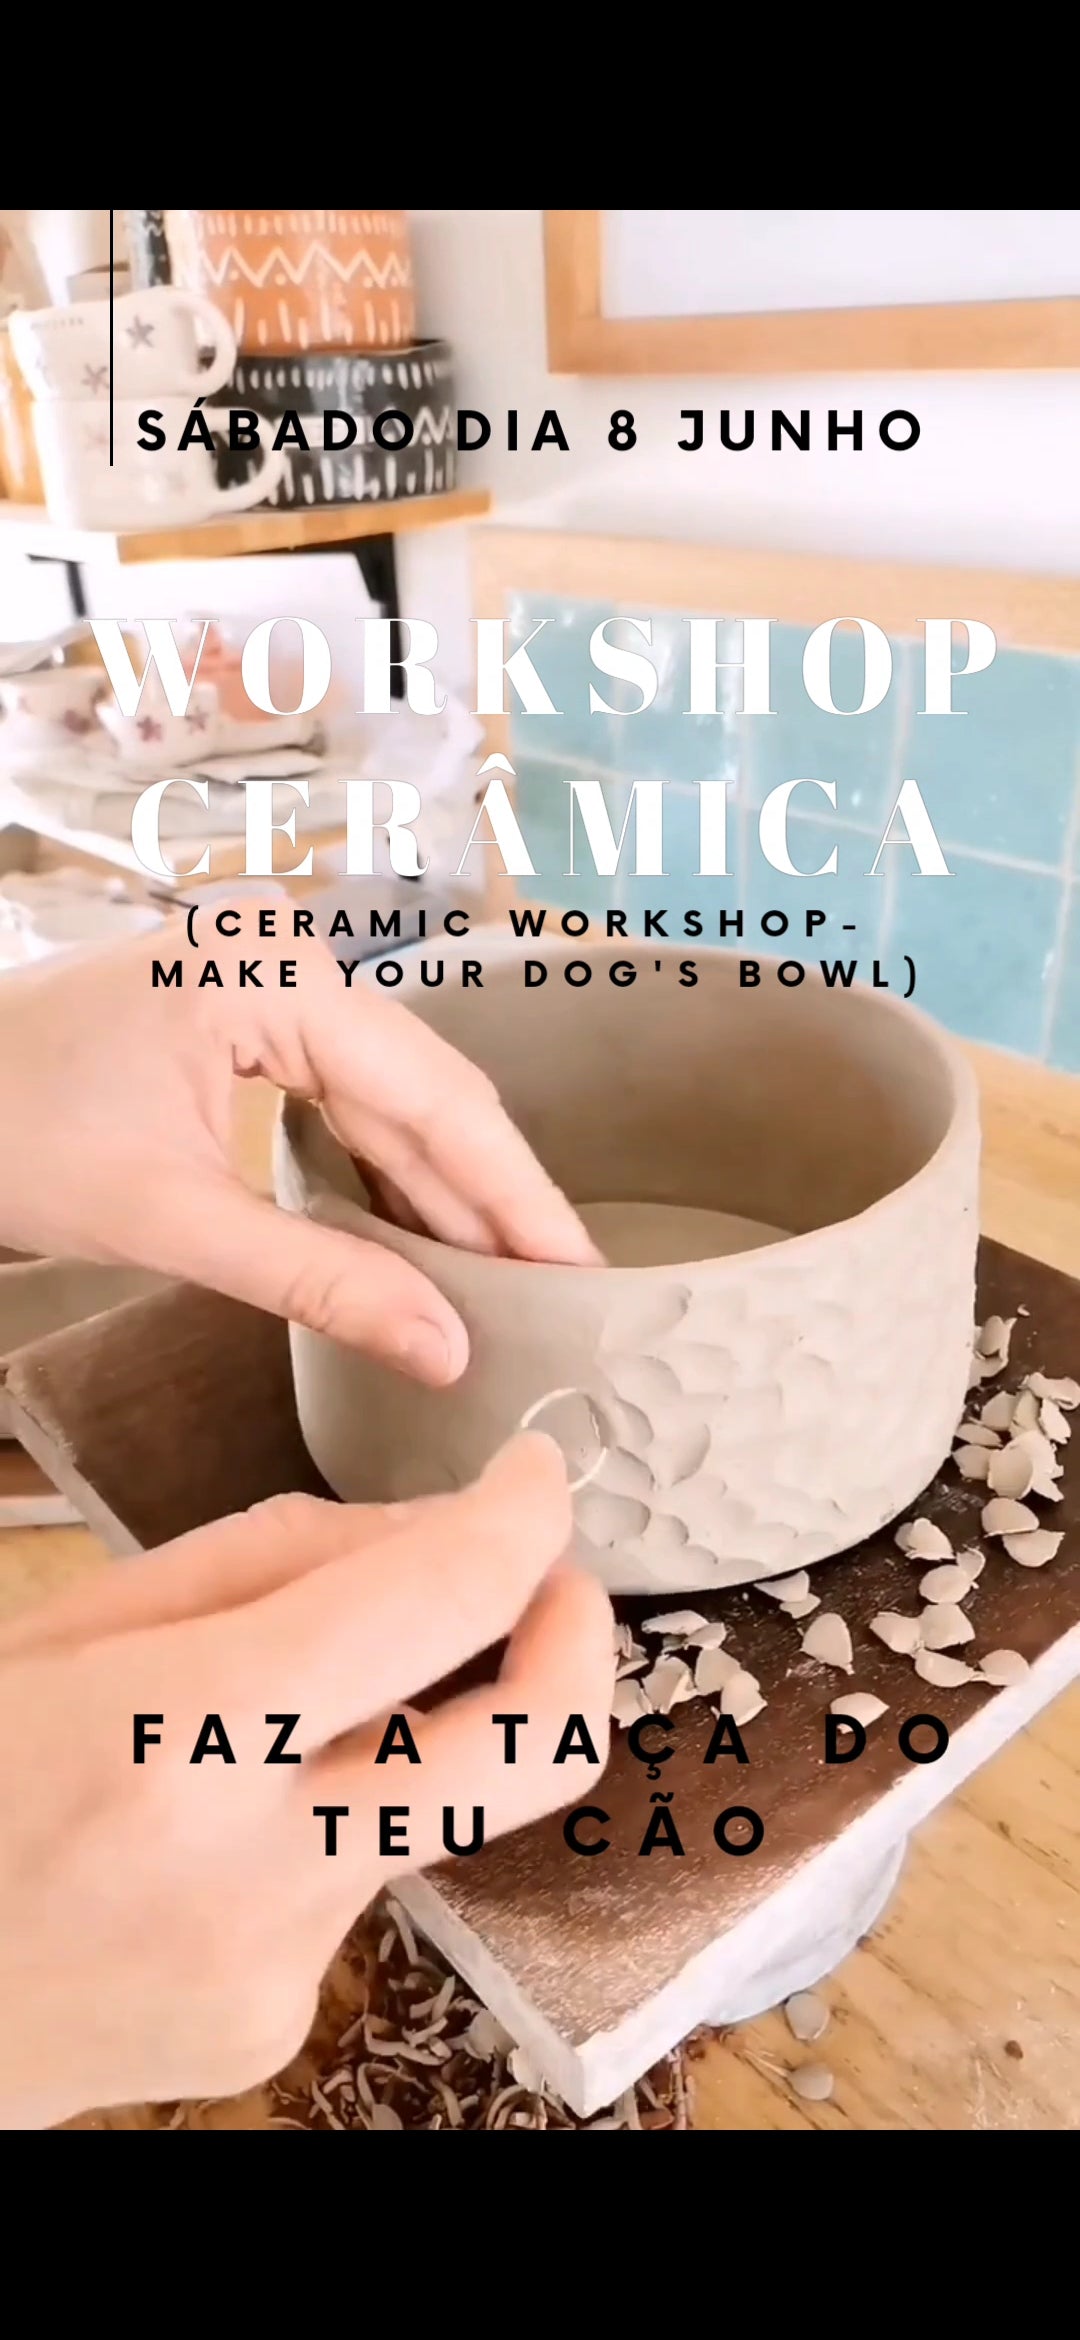 Workshop Cerâmica - Faz a taça do teu cão